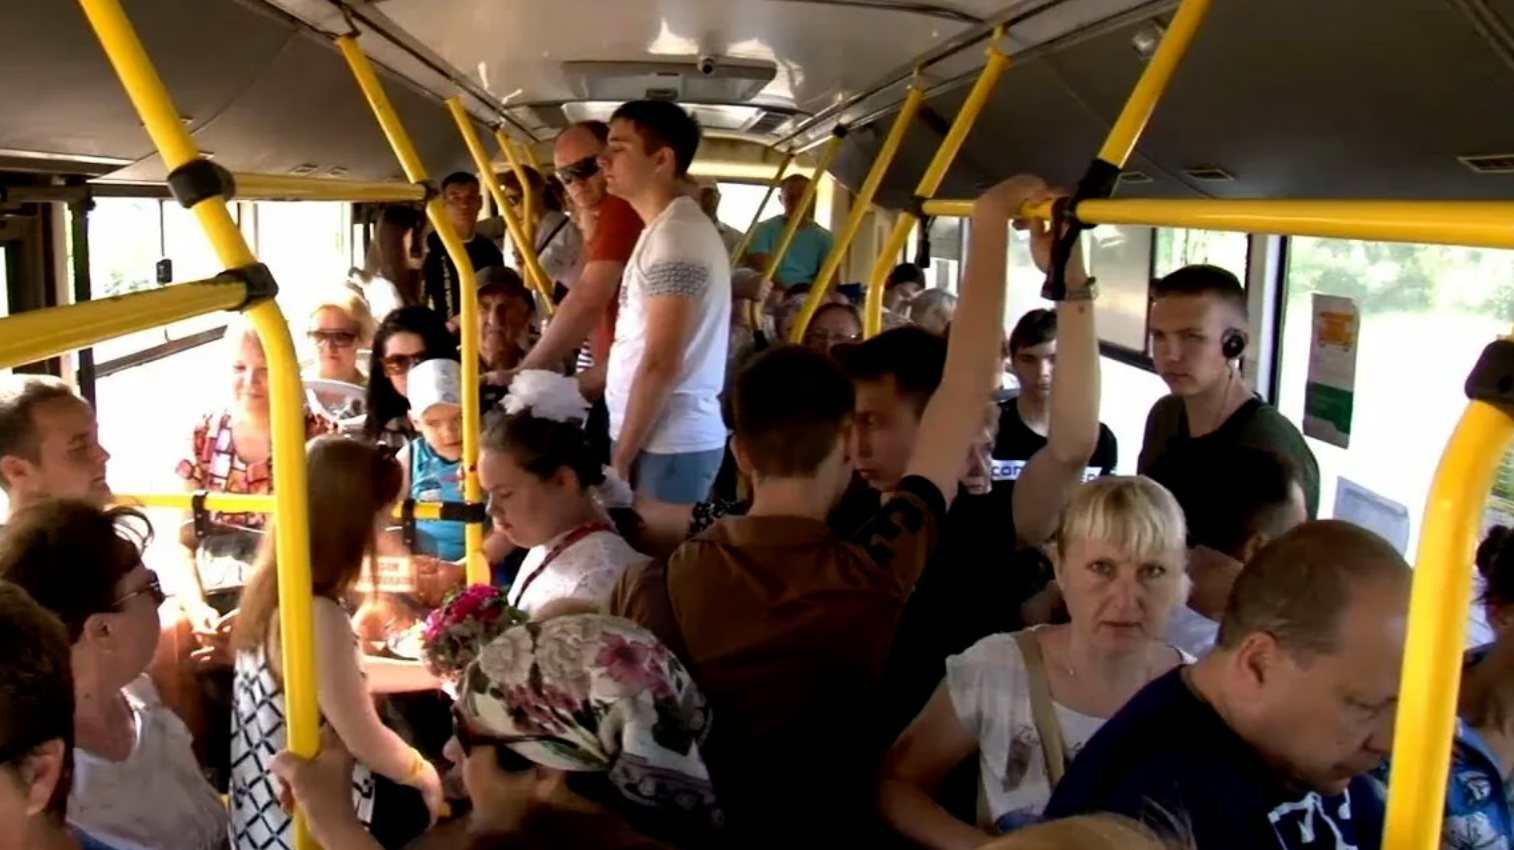 13 часов в автобусе. Толпа людей в автобусе. Автобус внутри с людьми. Толба люднц в автобему. Много людей в автобусе.